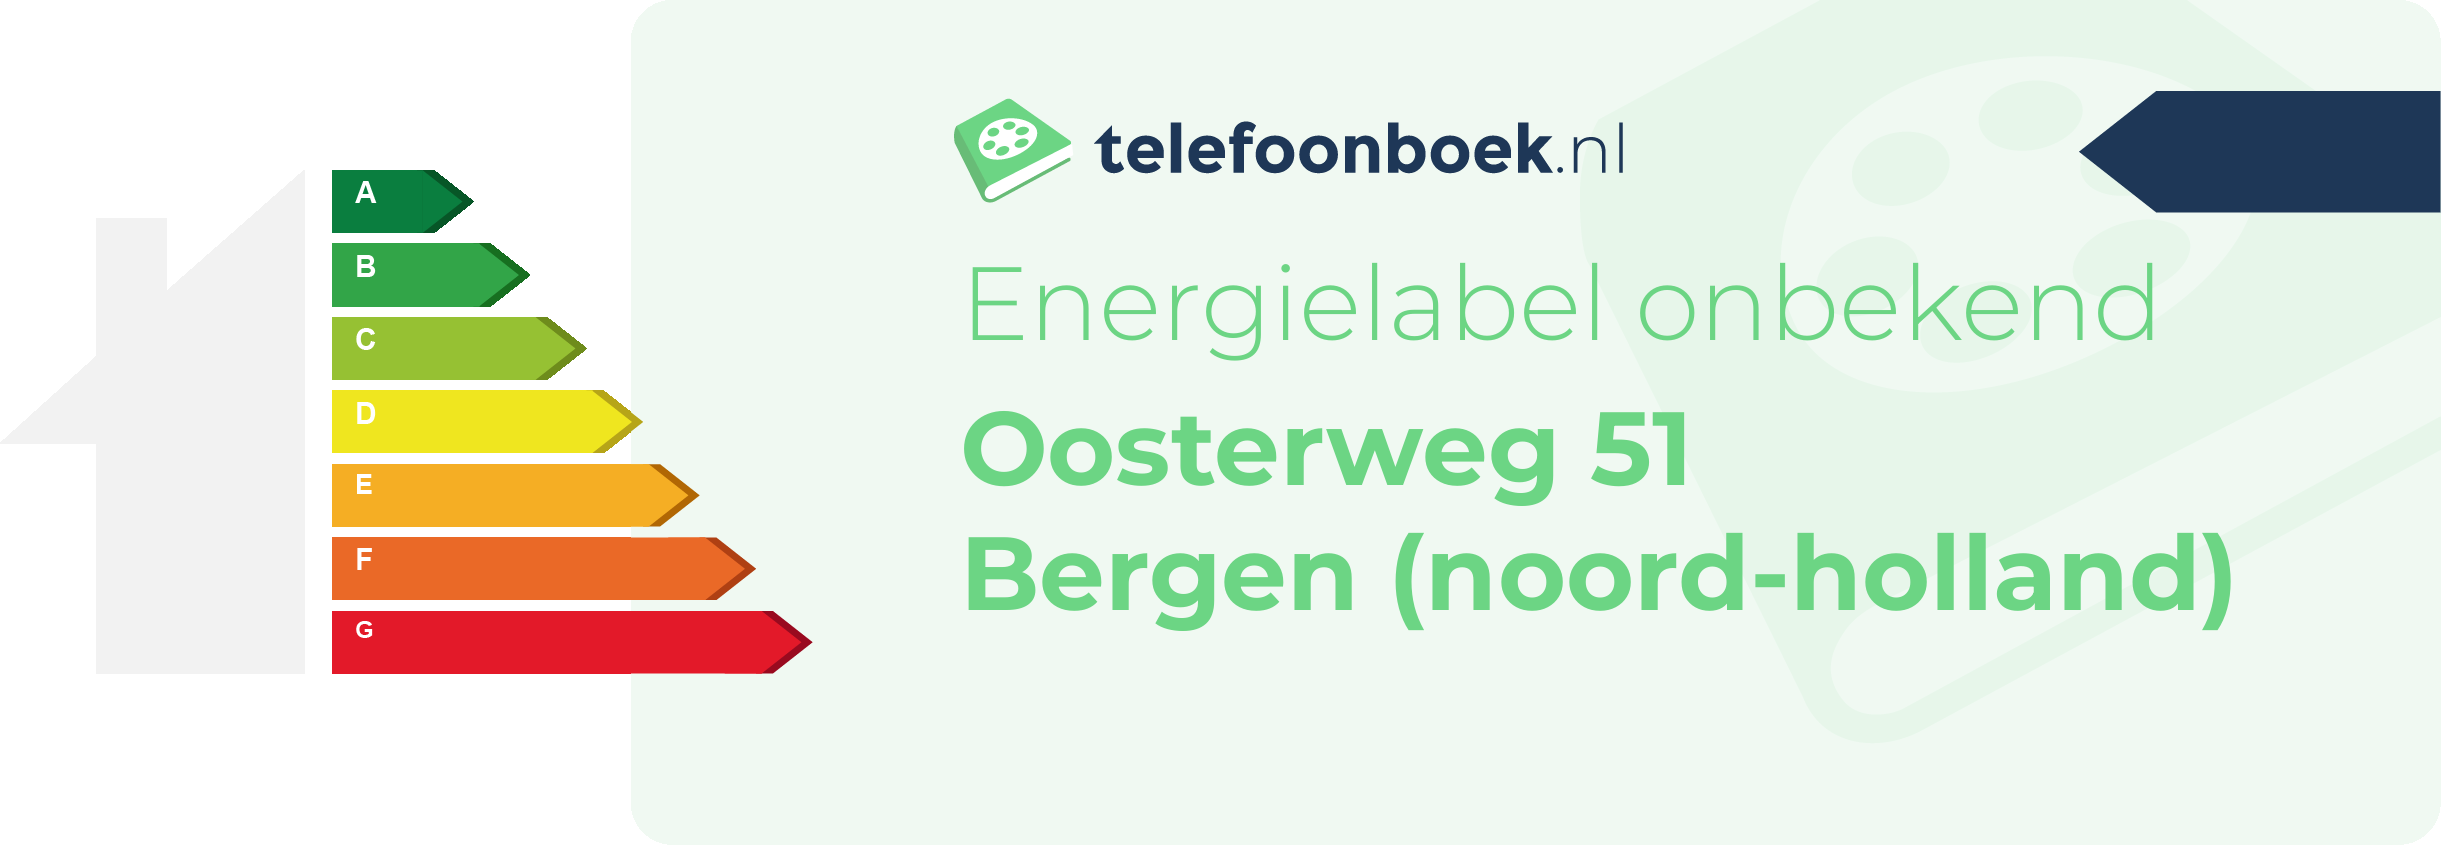 Energielabel Oosterweg 51 Bergen (Noord-Holland)